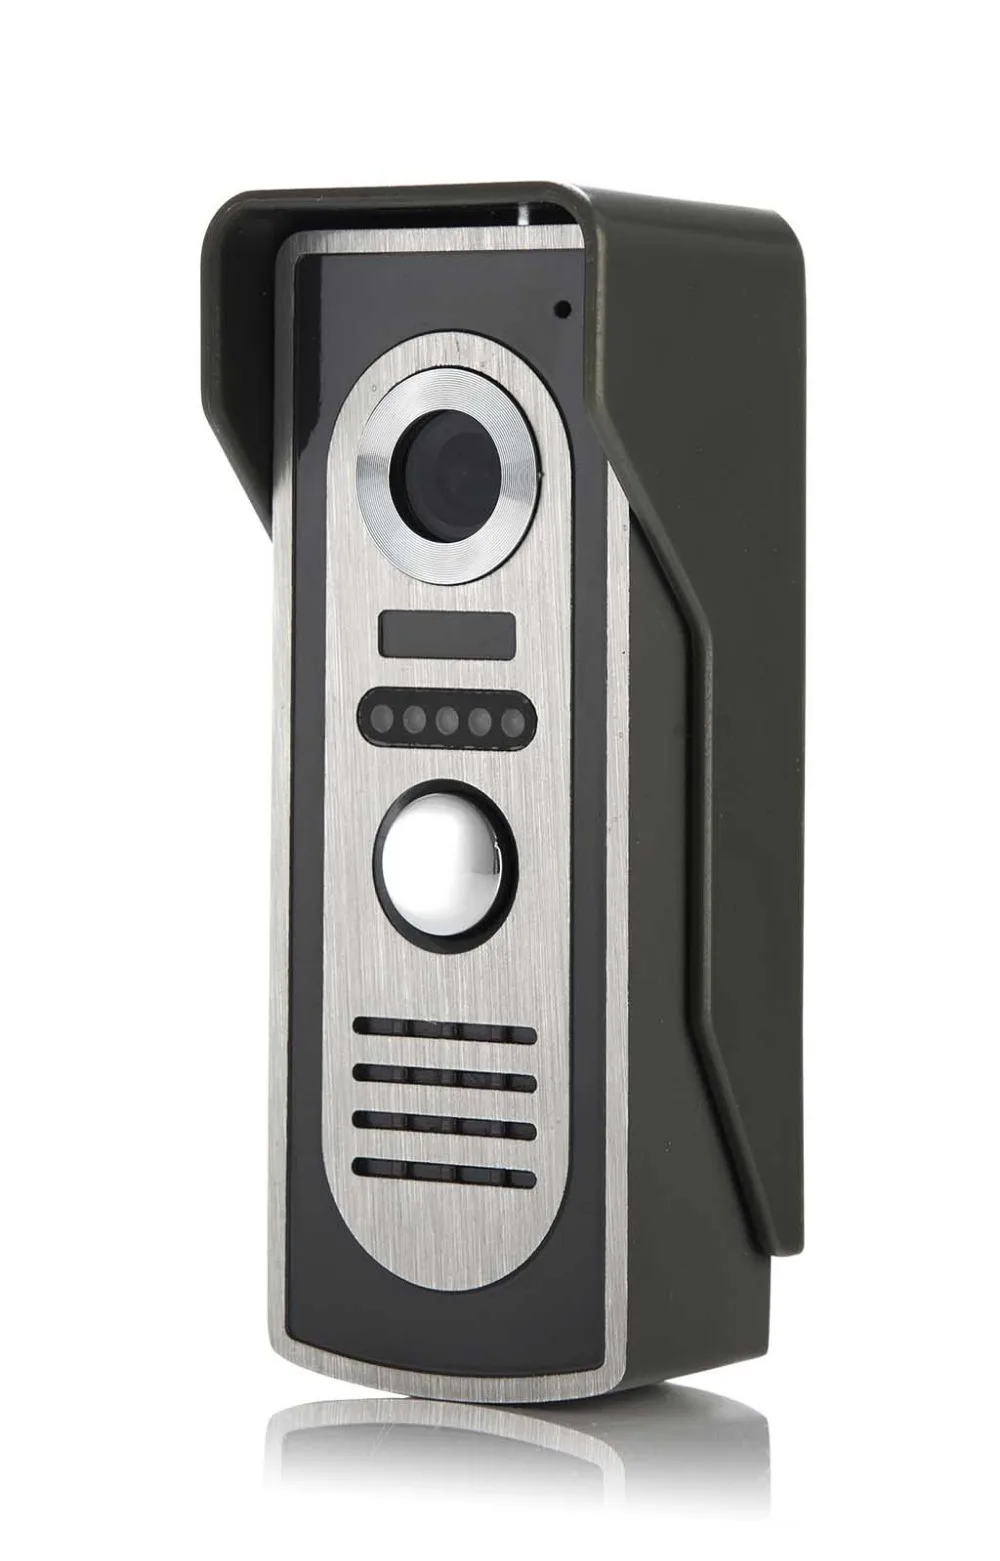 SmartYIBA видеодомофон 7 дюймов проводной видео телефон двери дверной звонок визуальный спикерфон домофон ИК-камера монитор системы